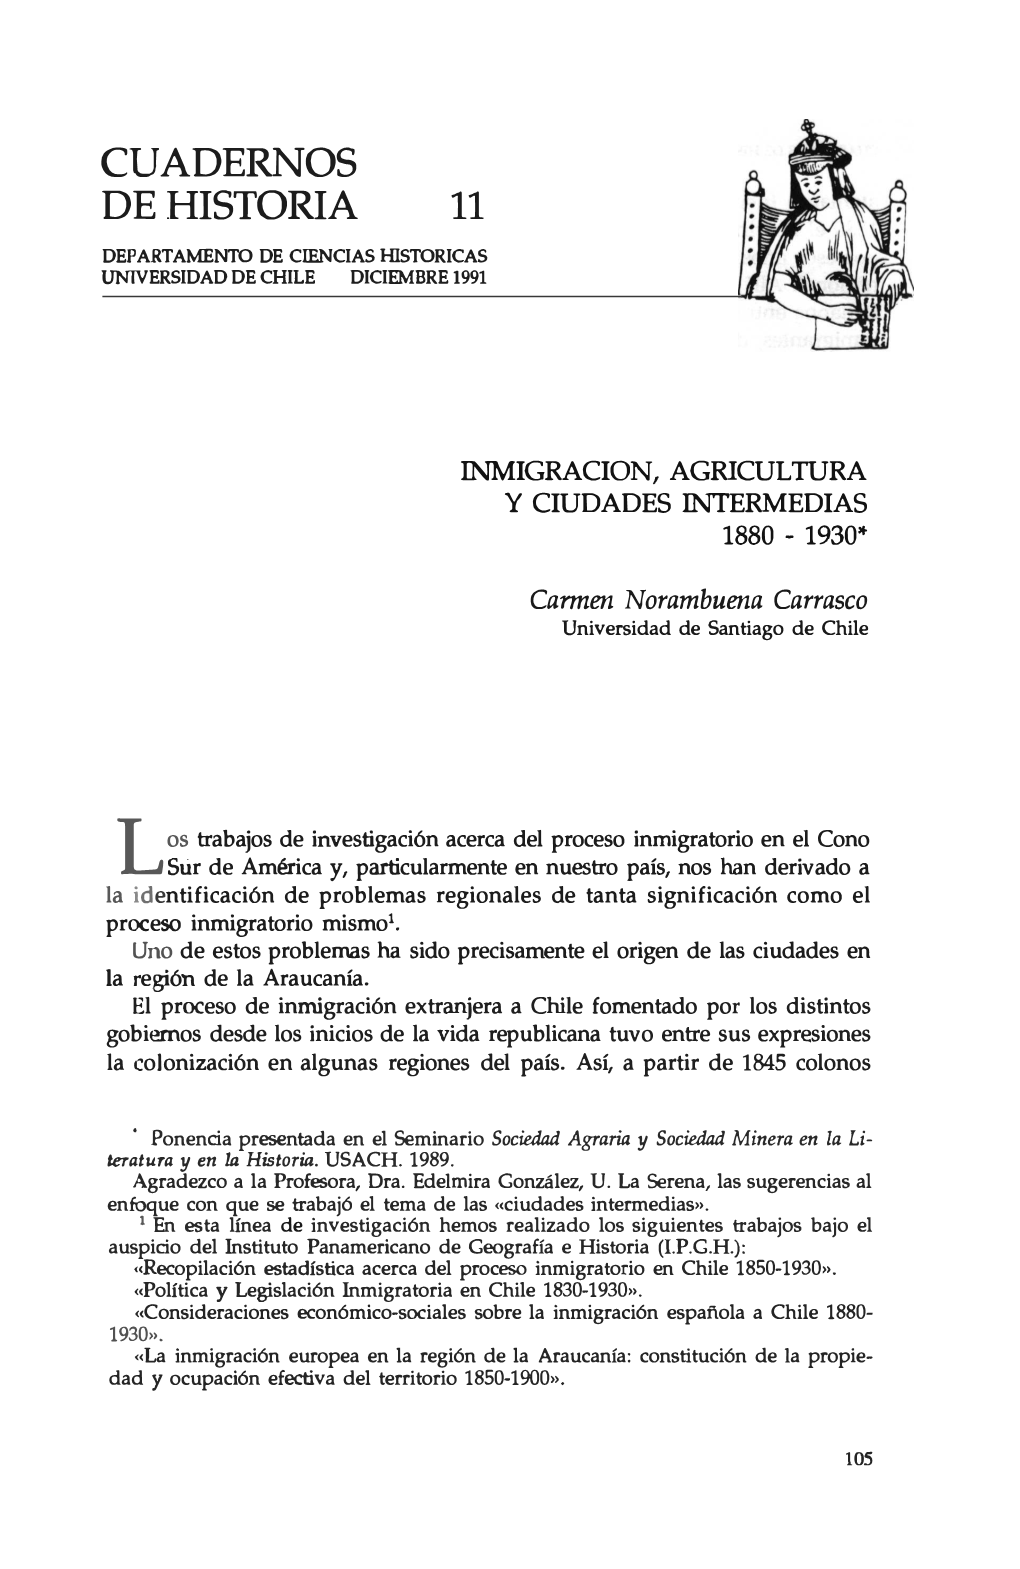 CUADERNOS DE HISTORIA 11 DEPARTAMENTO DE CIENCIASHISTORICAS Unlversidadde CHILE DICIEMBRE1991